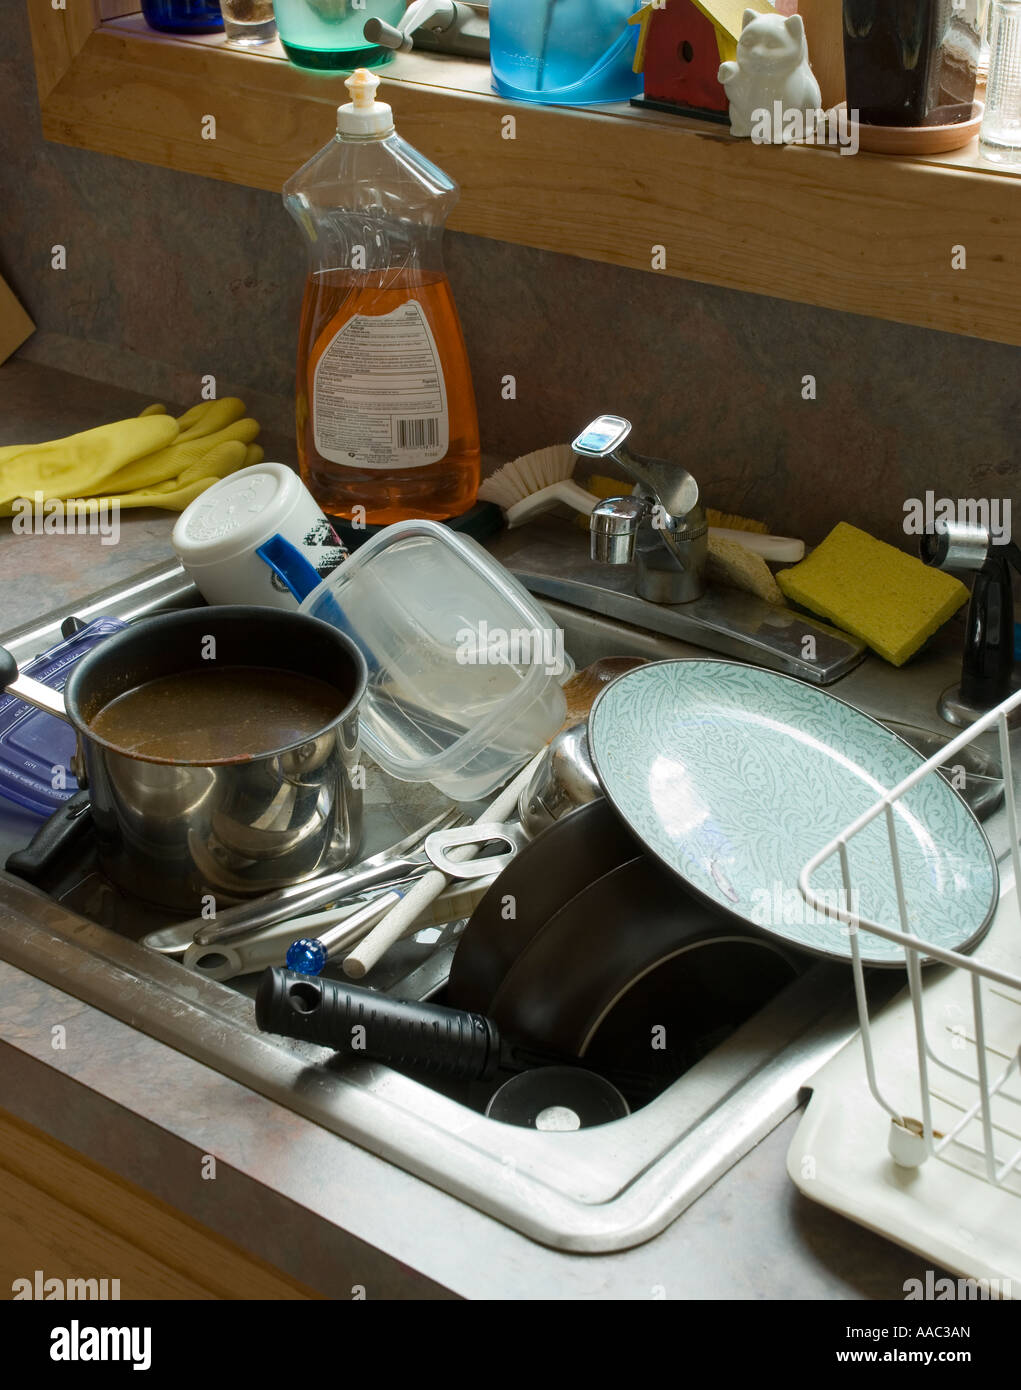 Come pila di piatti sporchi in un lavello da cucina Foto Stock